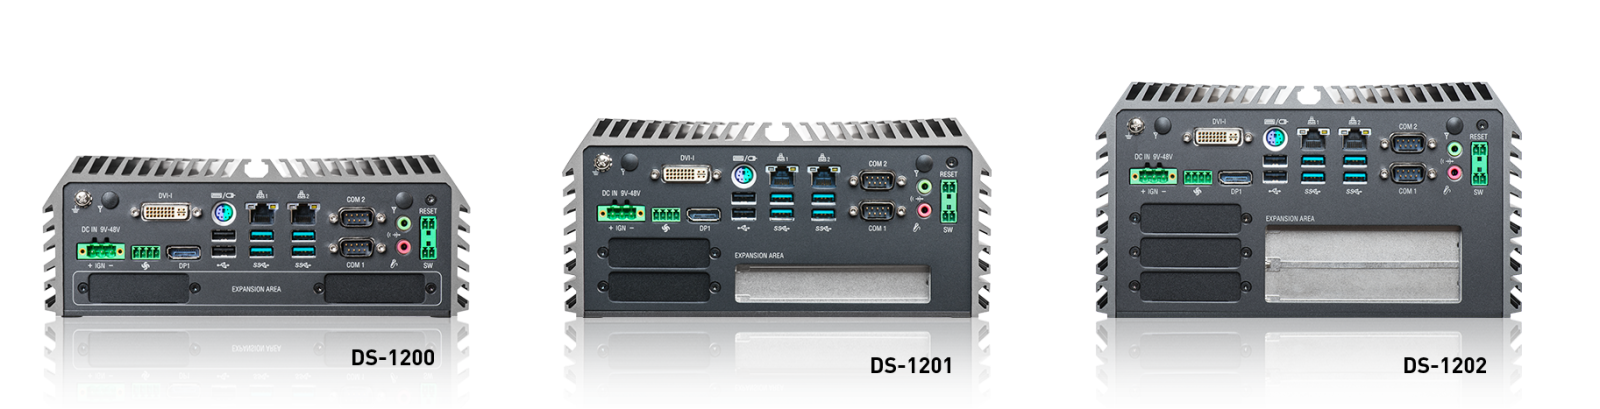 DS-1200系列产品